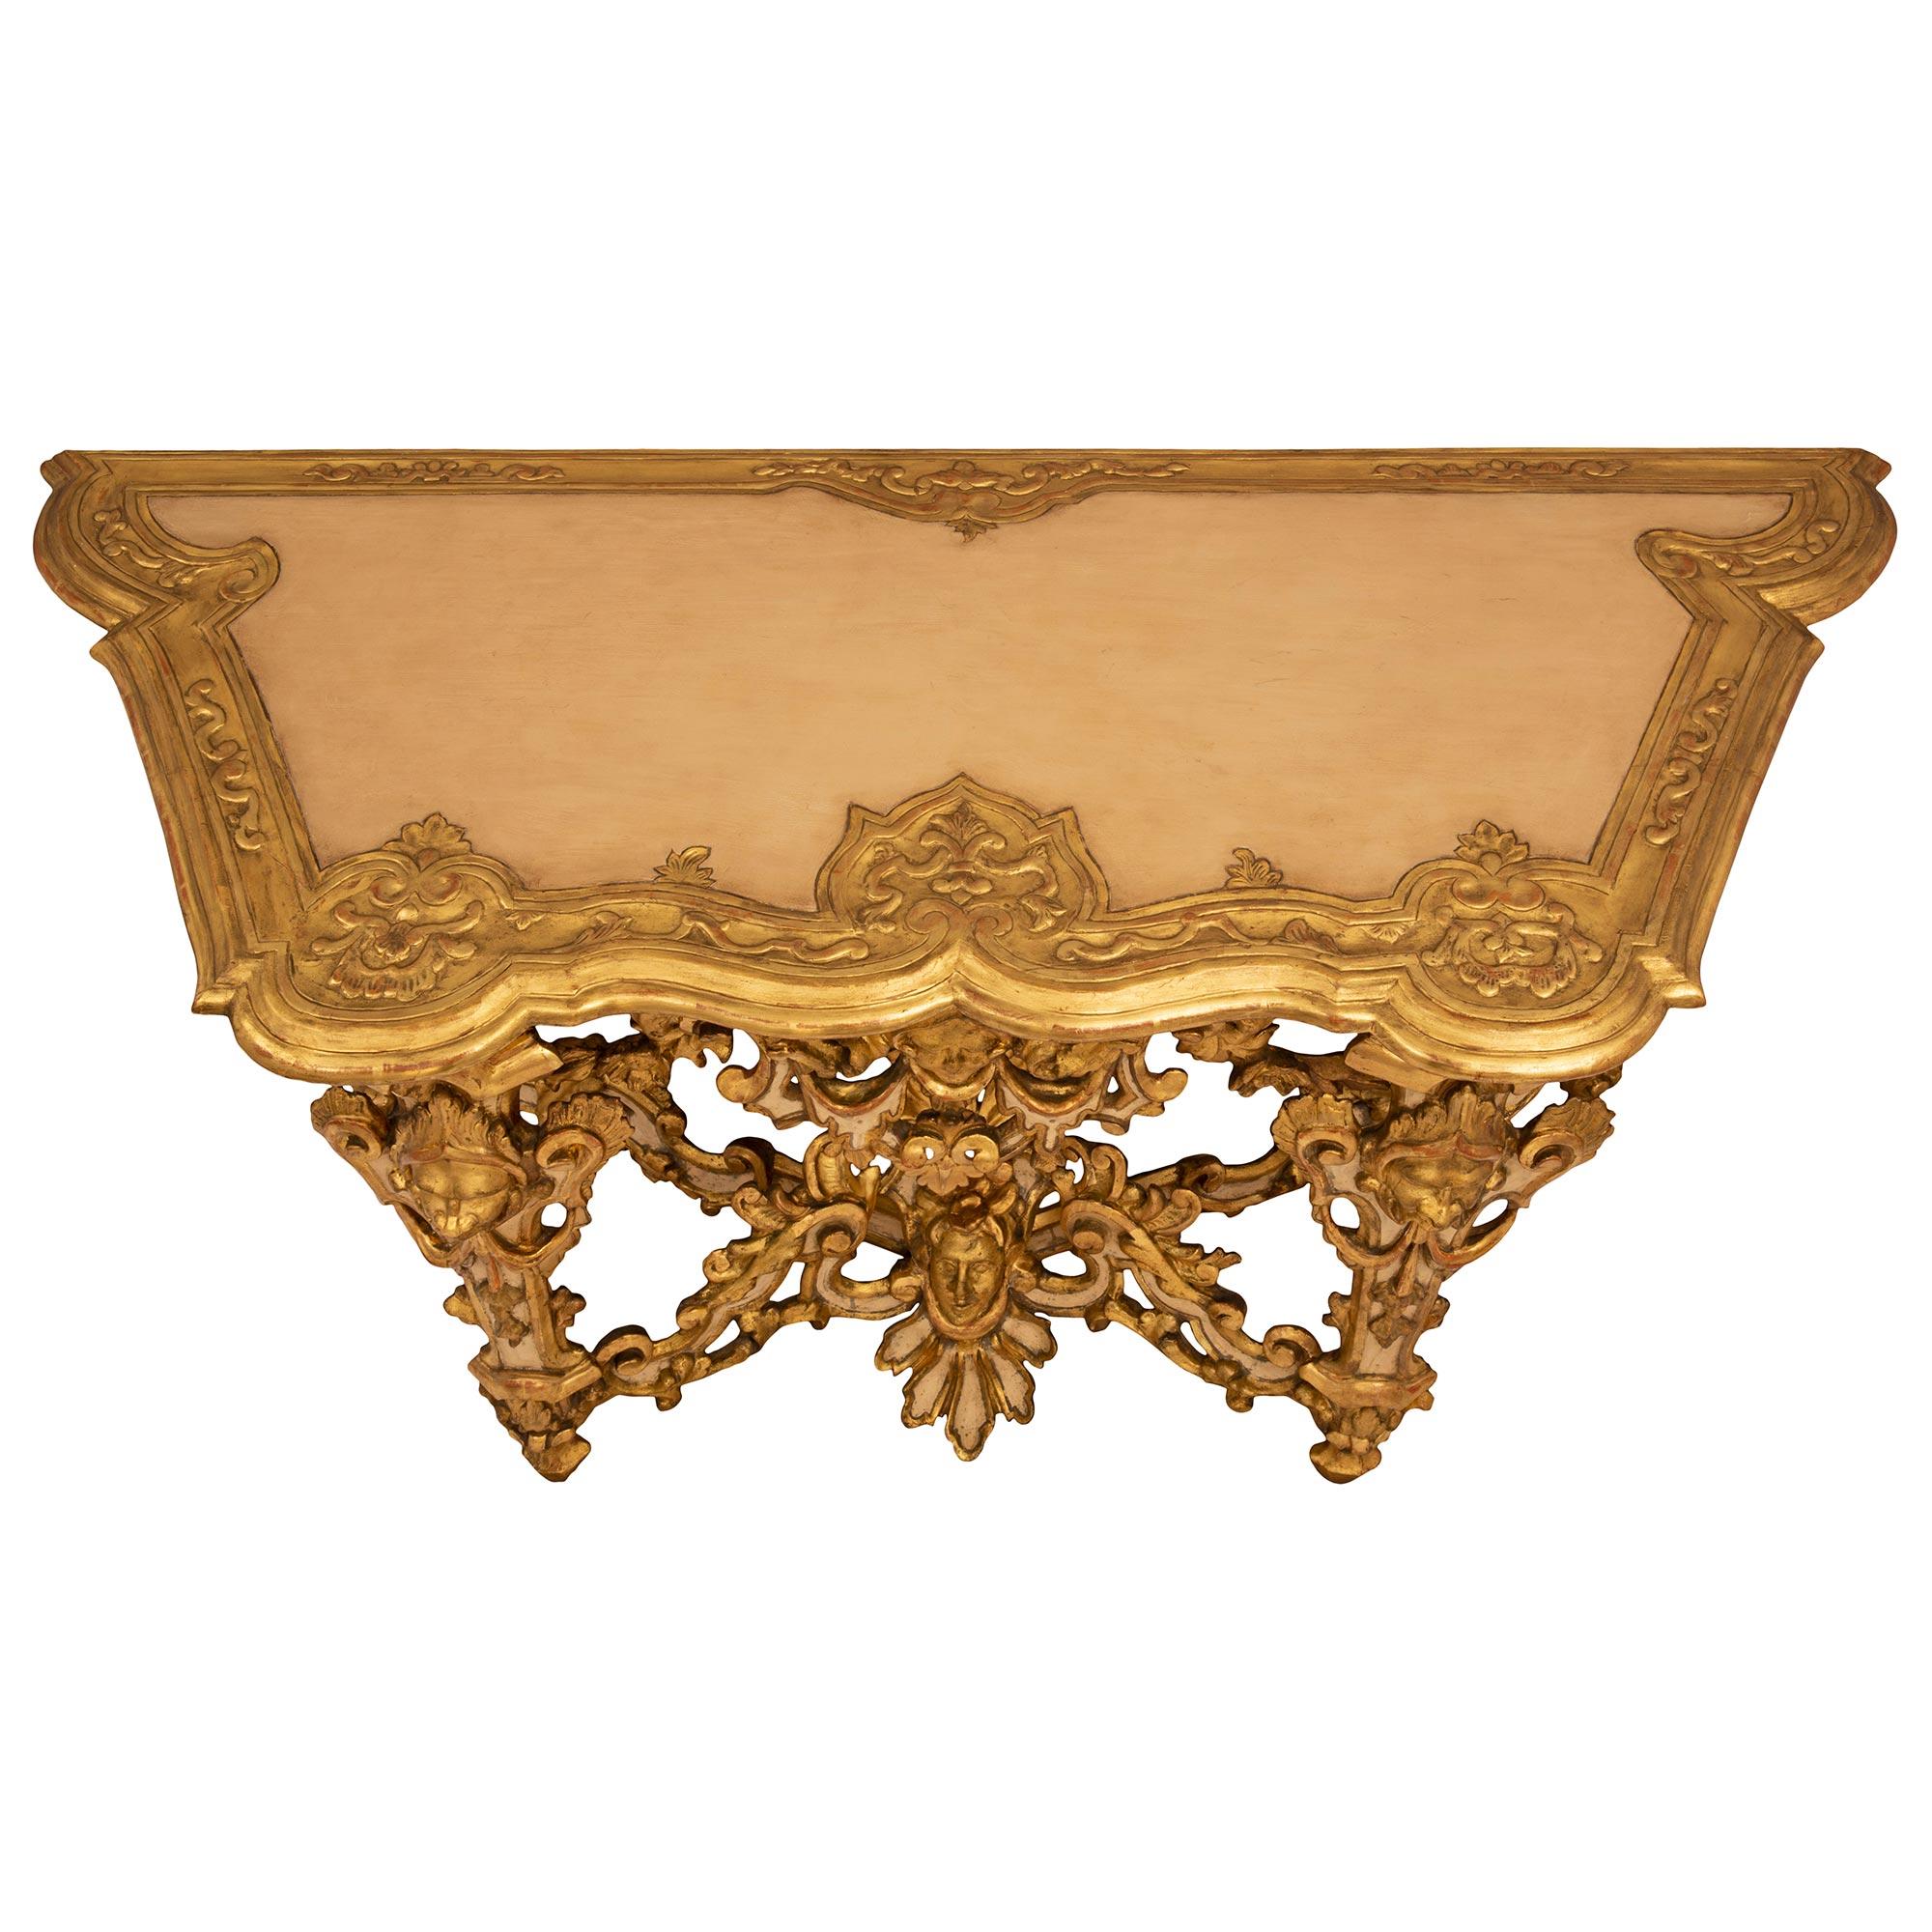 Une spectaculaire console Lombardi en bois doré et bois patiné d'époque Louis XIV, datant du 18ème siècle. La console autoportante de Lombardi est surélevée par quatre impressionnants supports coniques avec de fins pieds en forme de topie et de